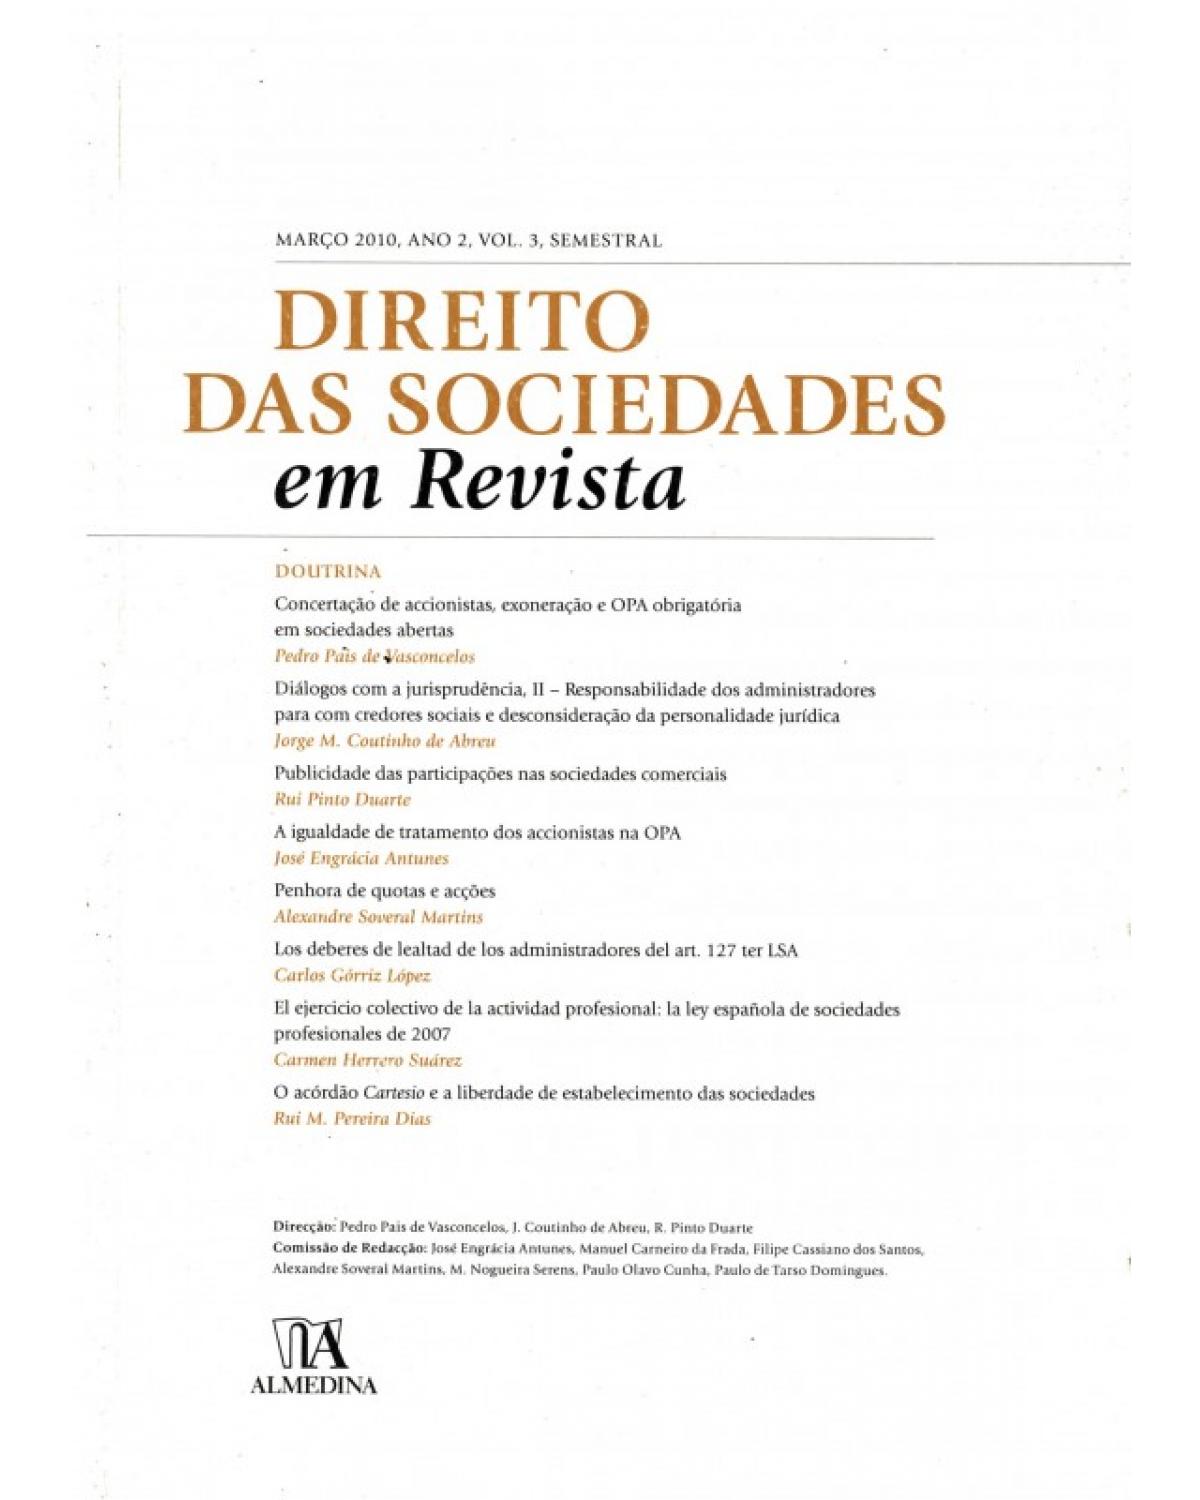 Direito das sociedades em revista - Volume 3: ano 2 (março 2010) - 1ª Edição | 2010